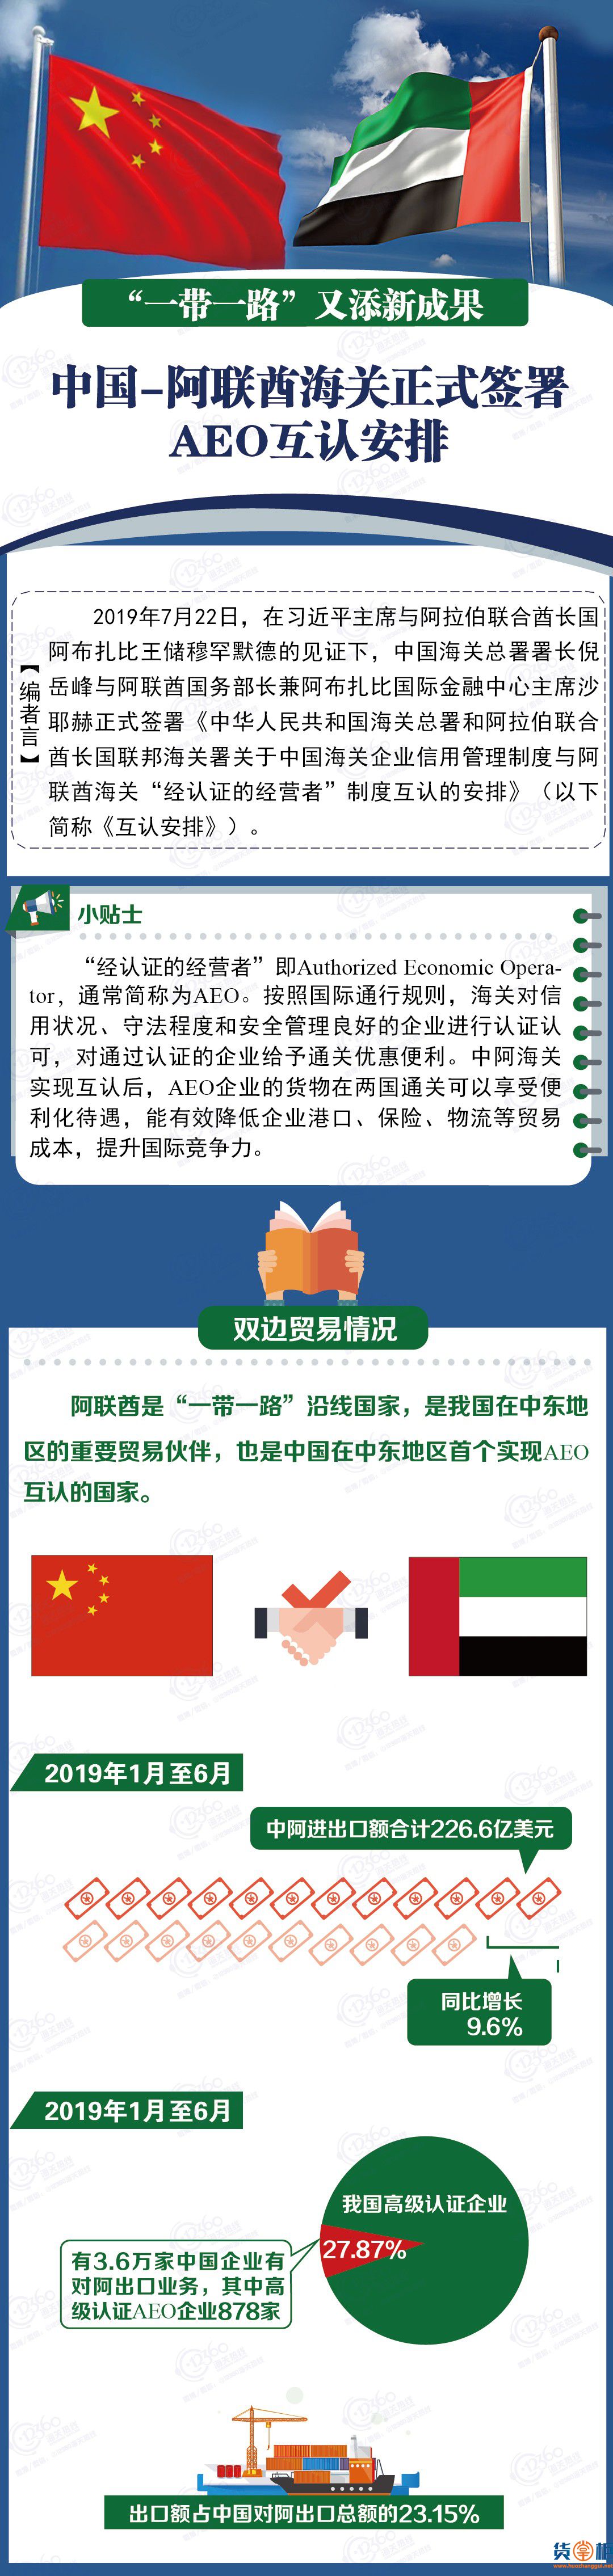 中国—阿联酋海关正式签署AEO互认安排